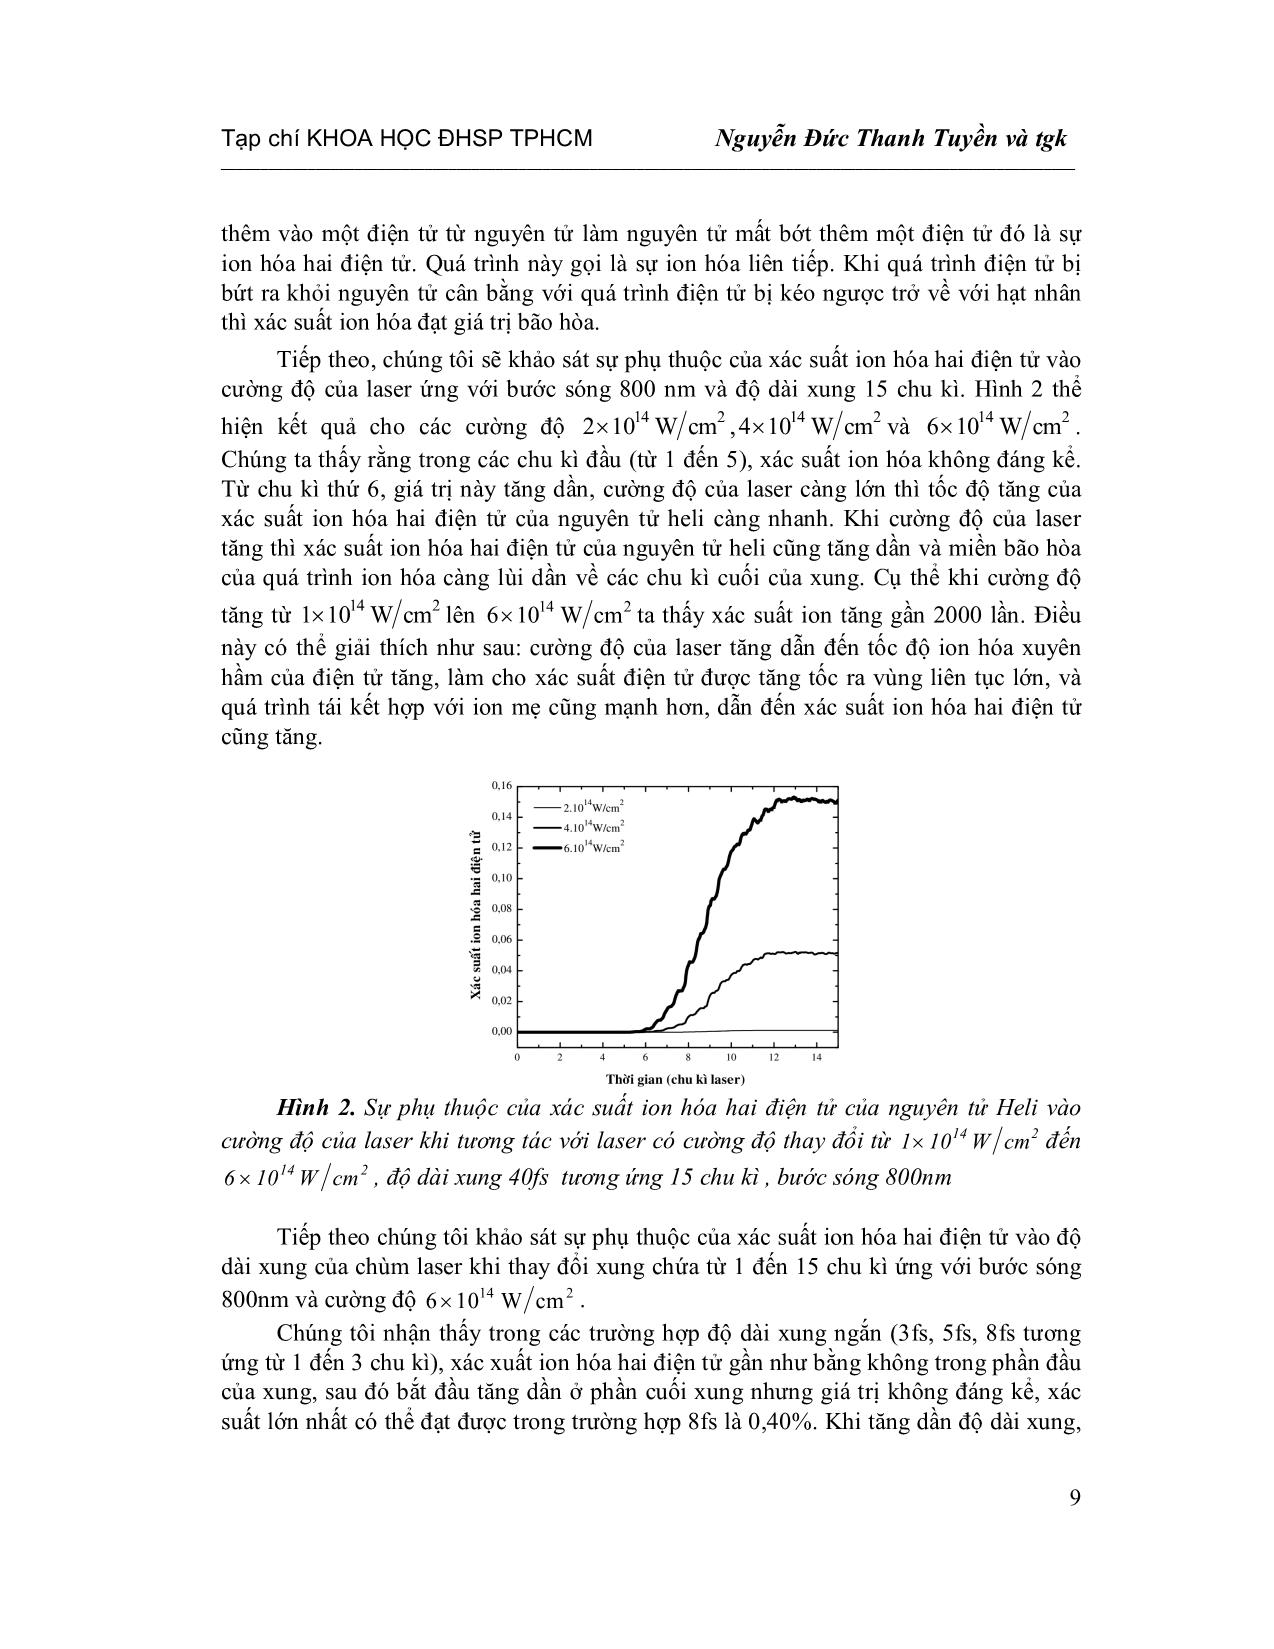 Quá trình Ion hóa hai điện tử của nguyên tử Heli bằng Laser cường độ cao xung cực ngắn trang 5